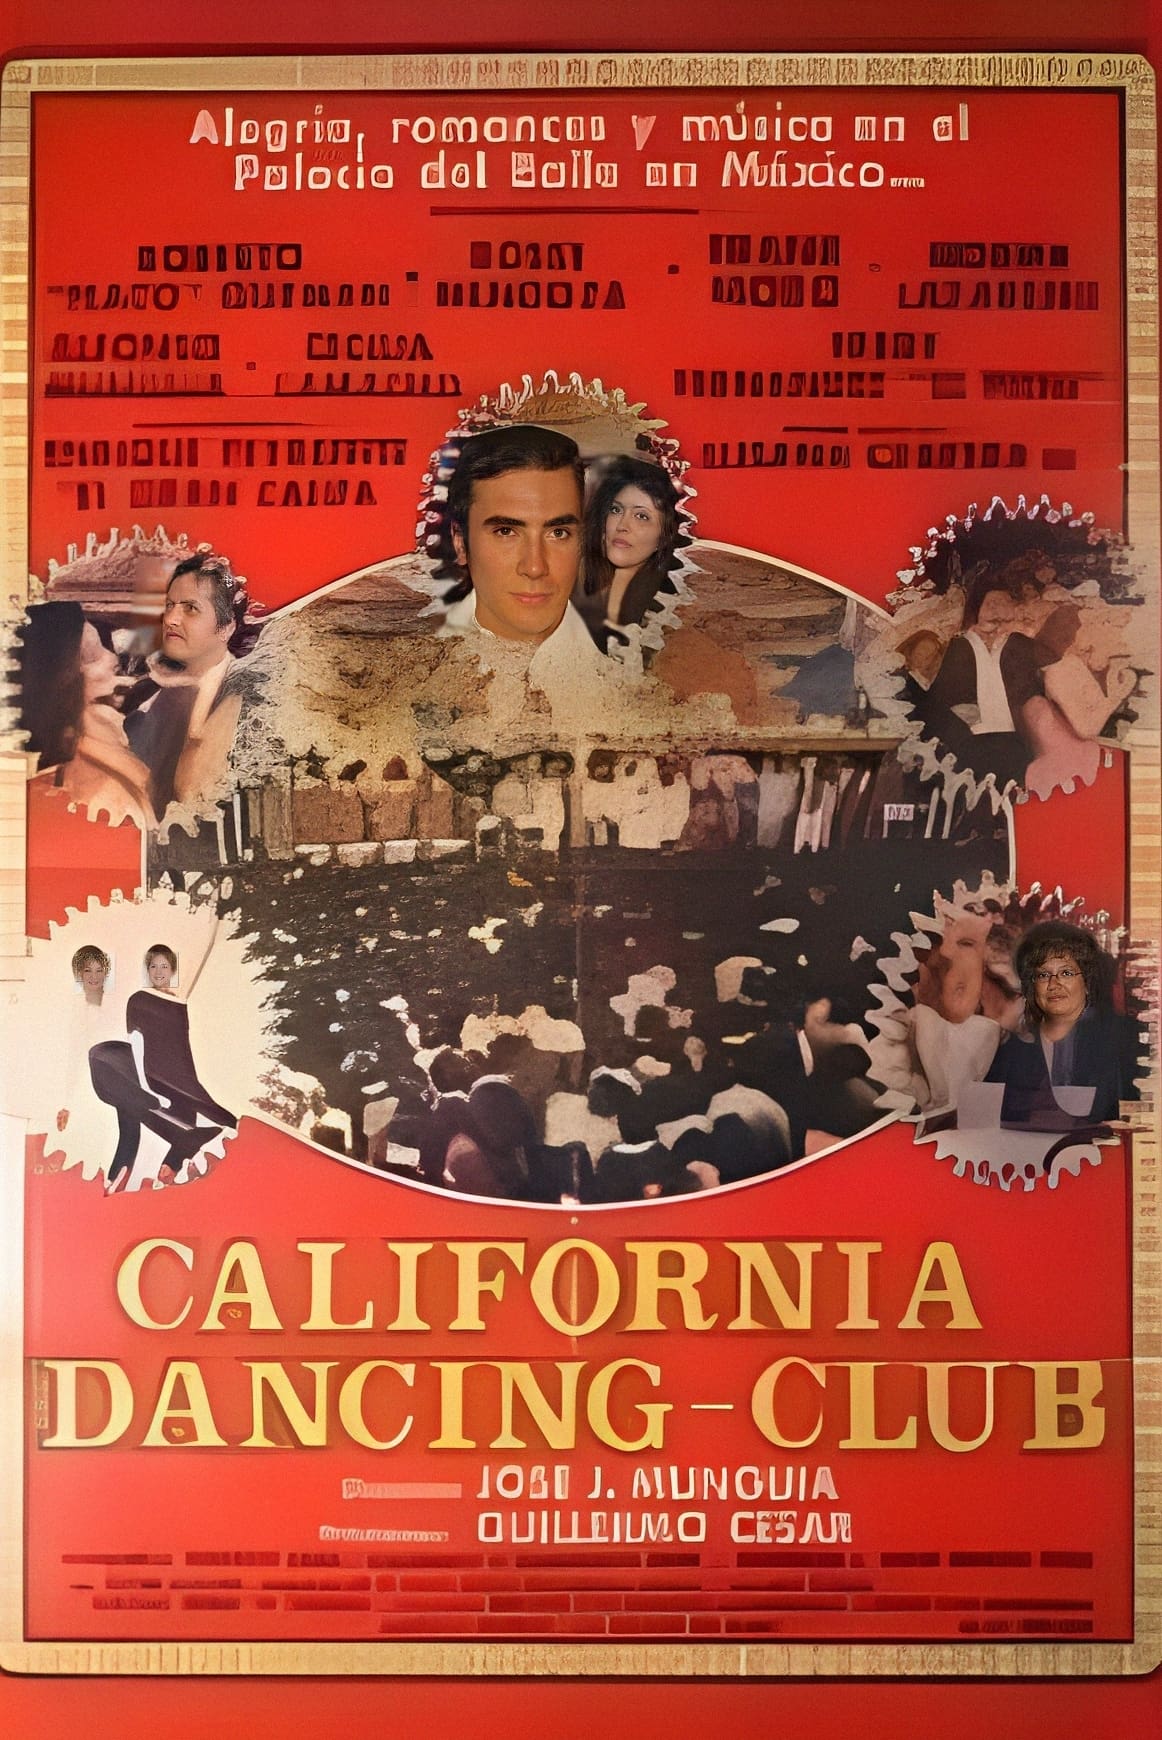 California Dancing Club